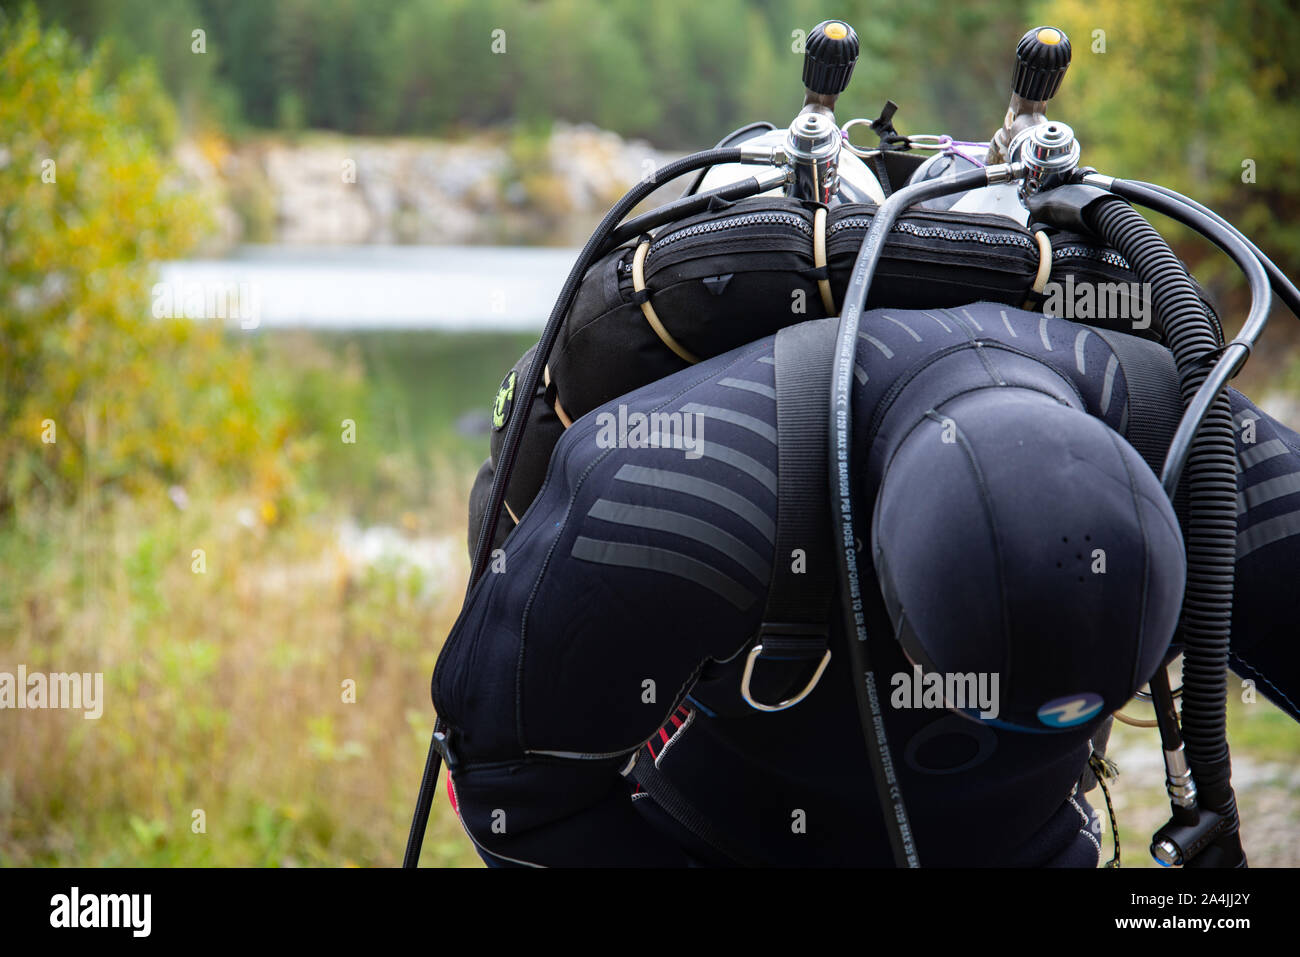 Paayanne See, Finnland - September 2019. Diver prüft Geräte in der Nähe des Sees. Männliche Taucher im Neoprenanzug überprüfen Ausrüstungen vor dem Eintauchen. Stockfoto